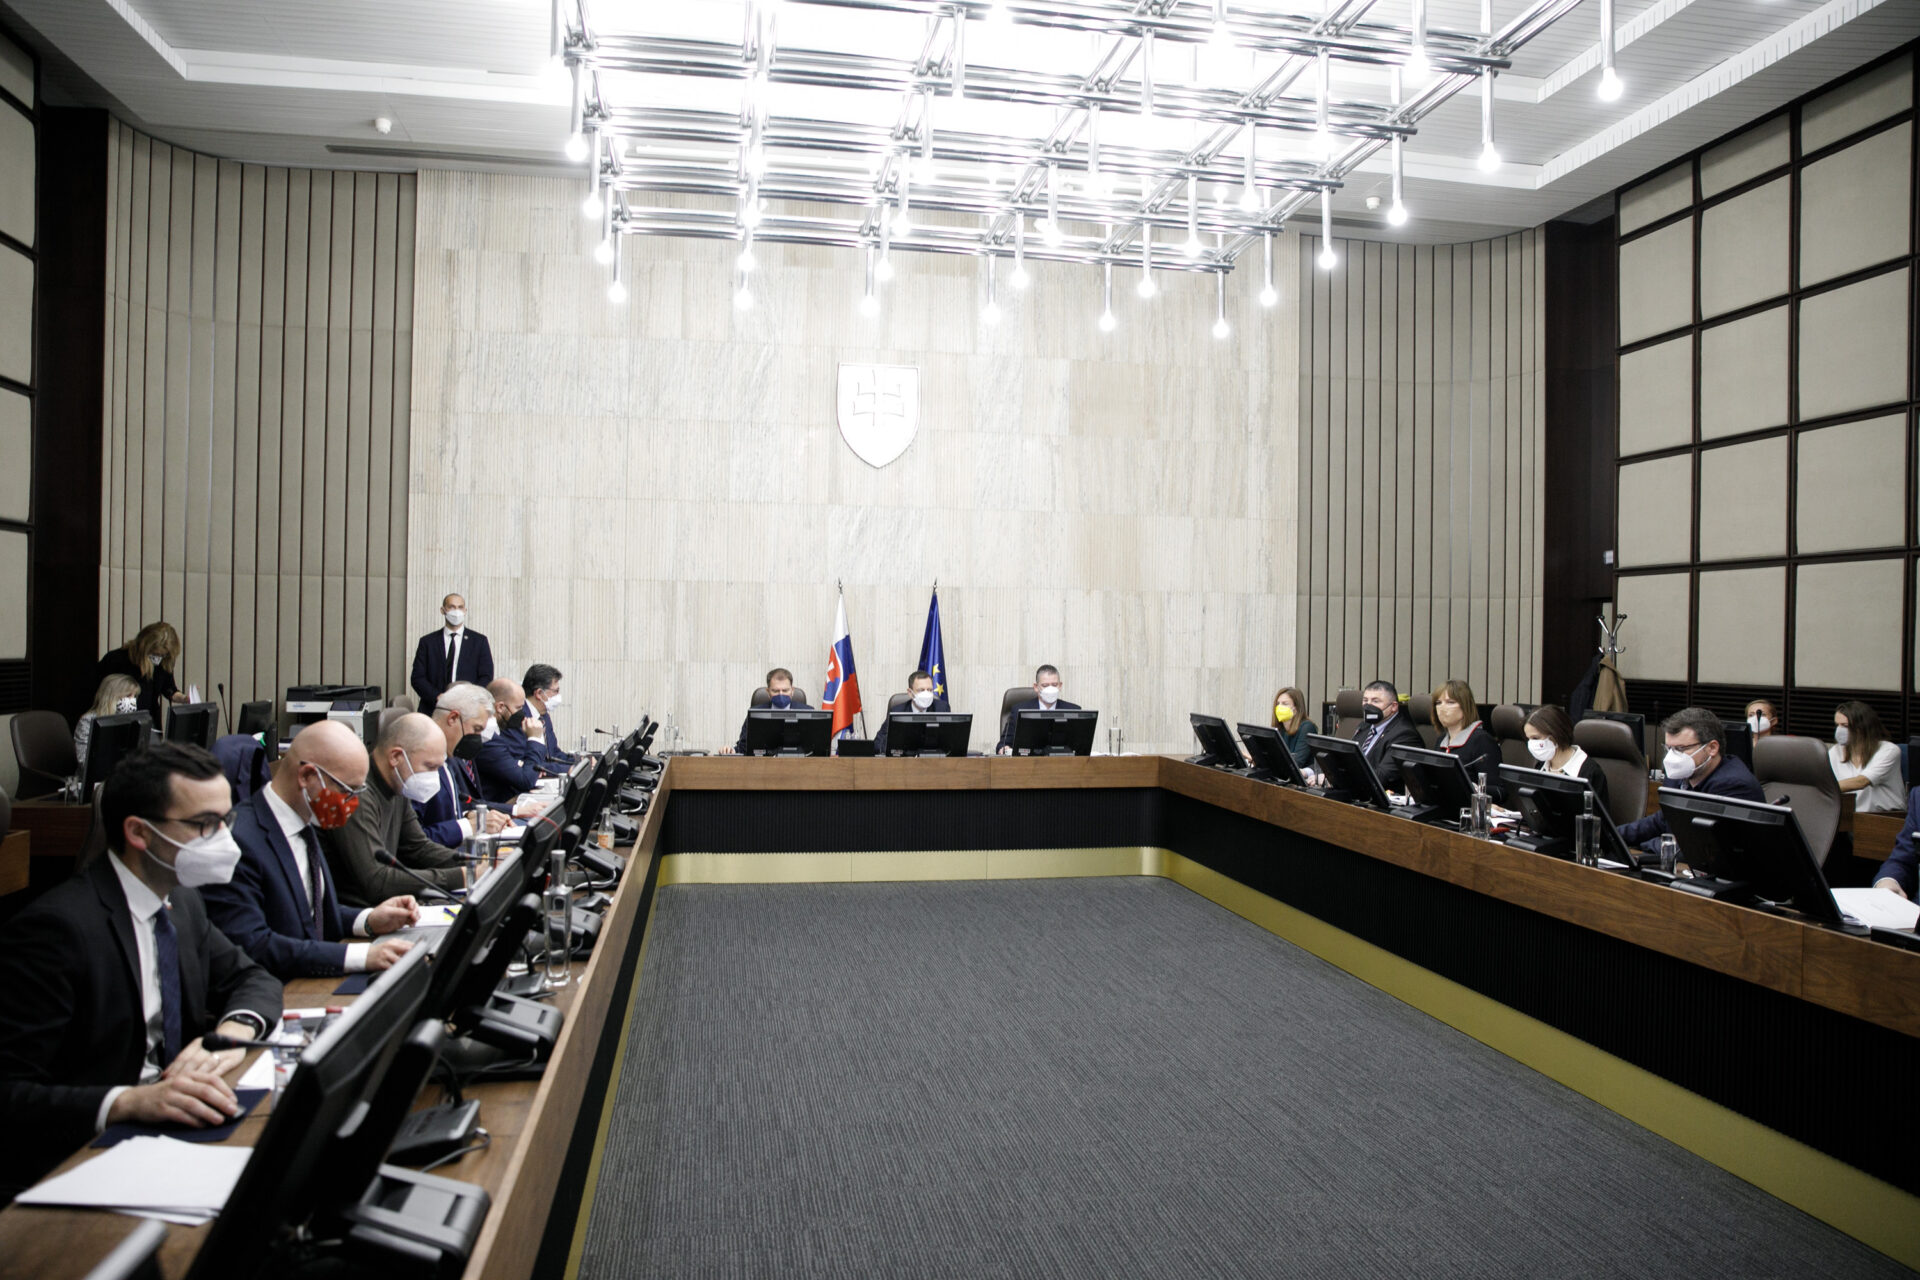 Ministri plánujú prerokovať viacero návrhov z oblasti justície a spravodlivosti